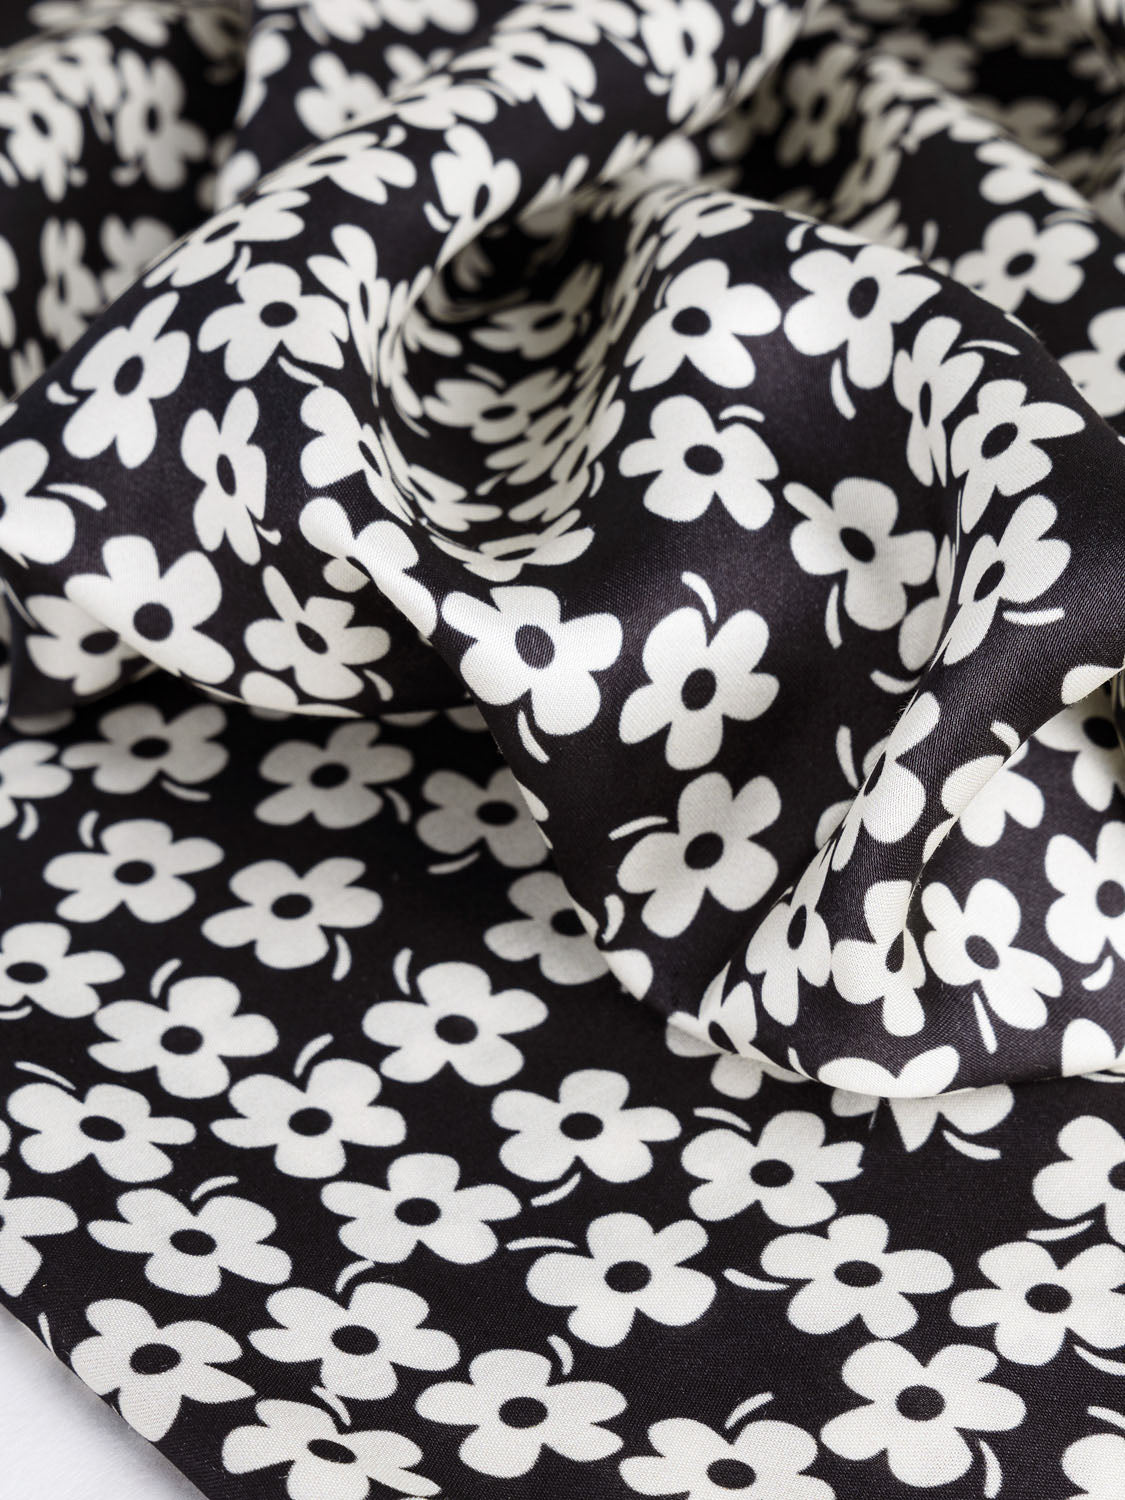  7pcs Black Series Floral Cotton Fabric 50x50cm Textile